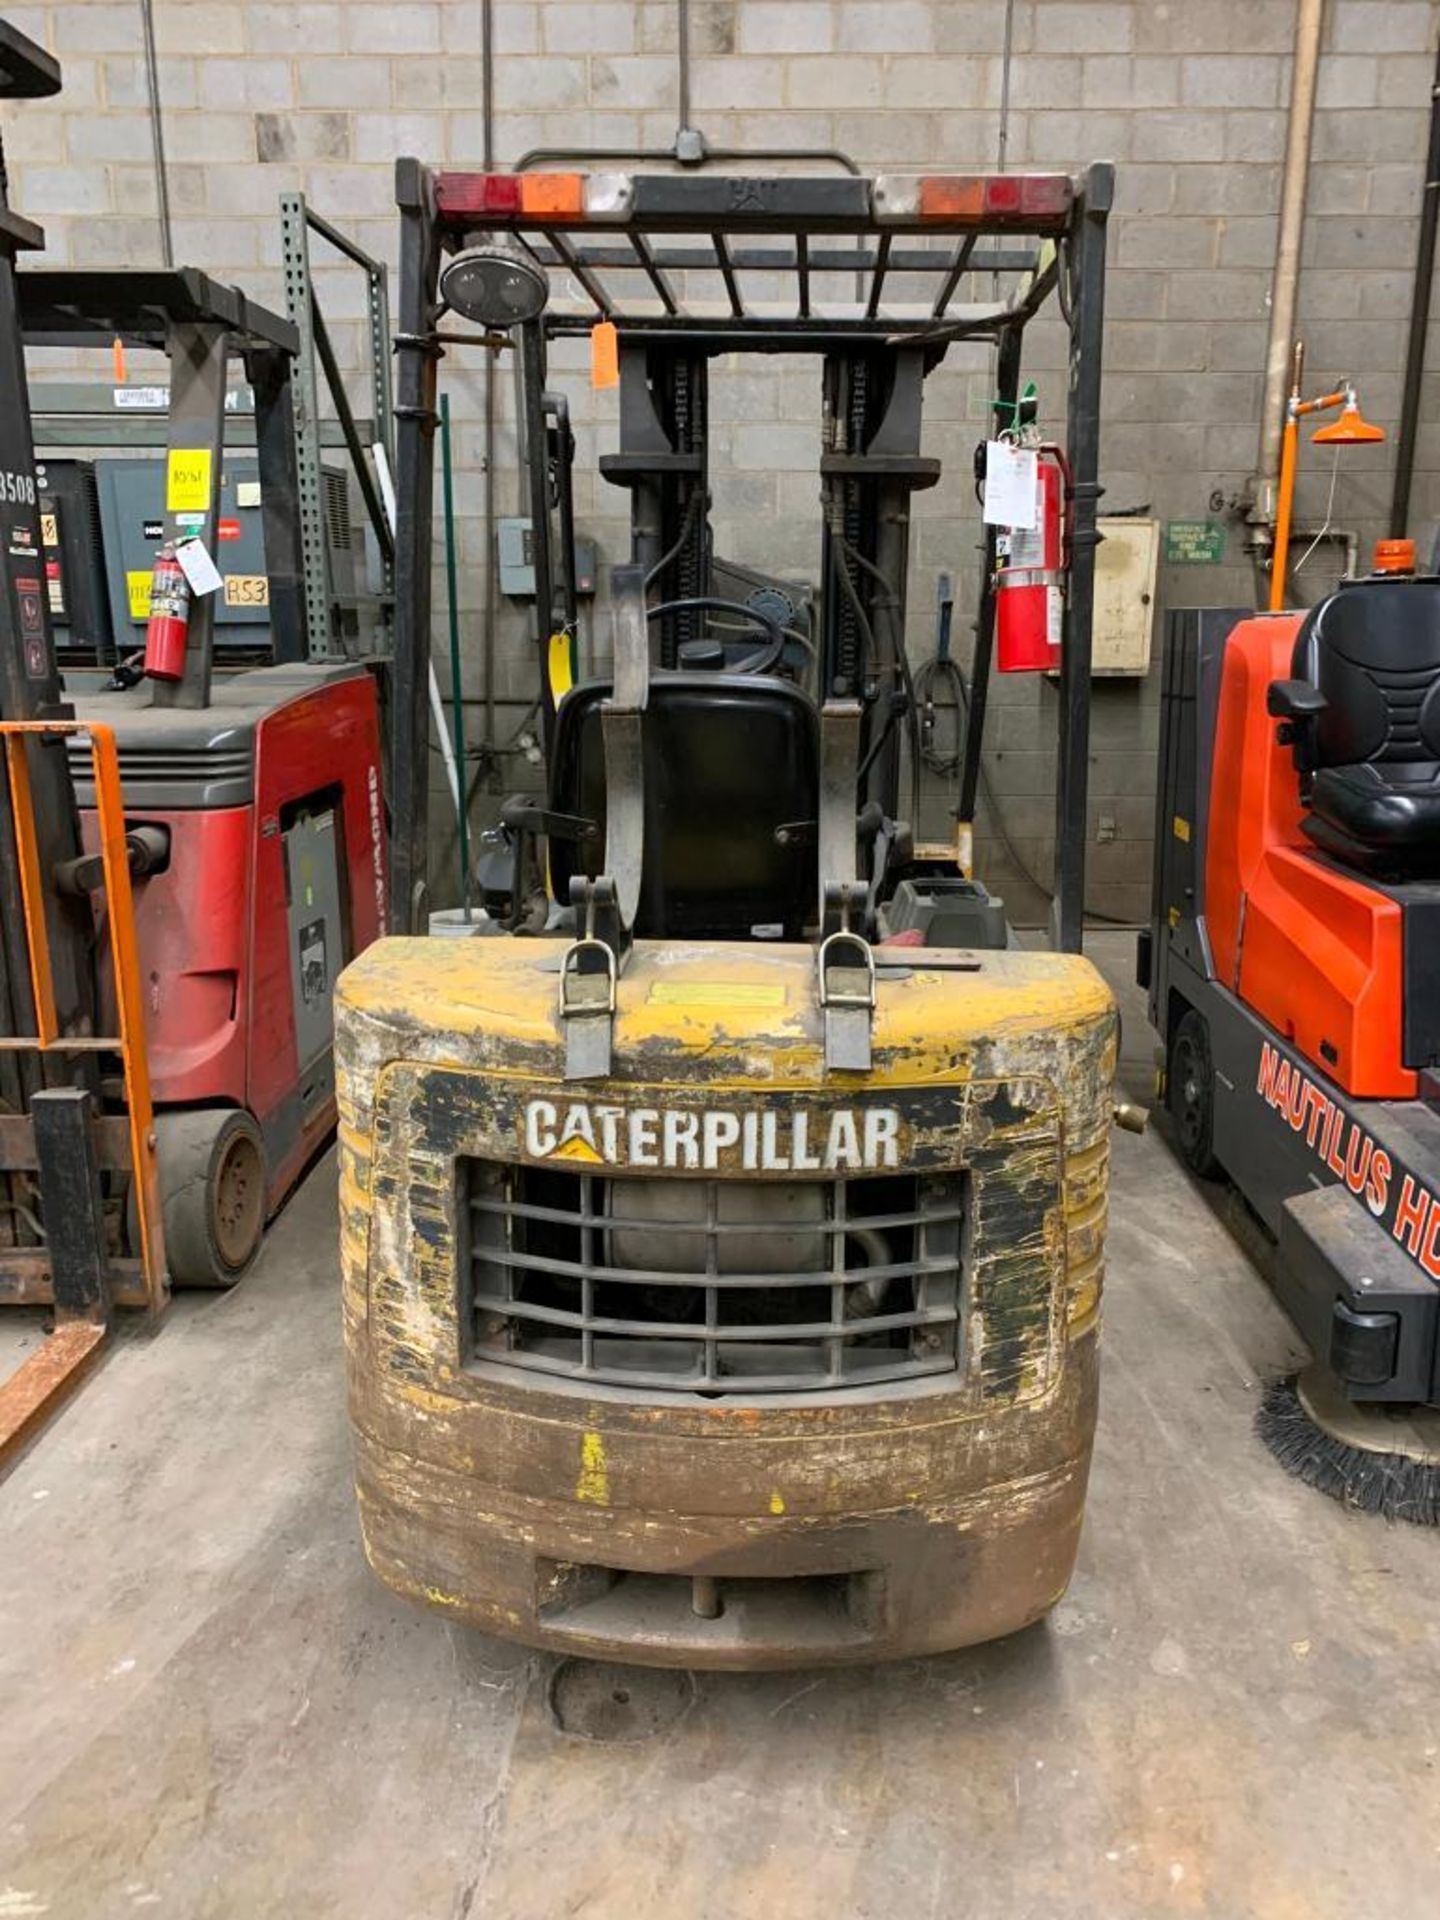 Caterpillar Forklift, LPG, 5,000 lb. Cap., Model GC25, S/N 4EM02386, Solid Tires, 3-Stage Mast, Side - Image 4 of 4